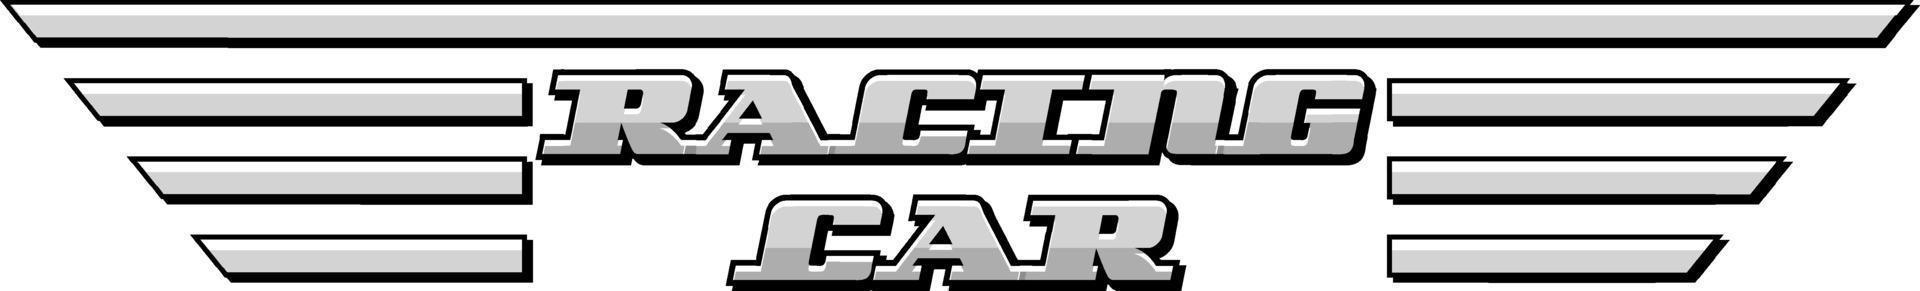 racerbil typografi design vektor